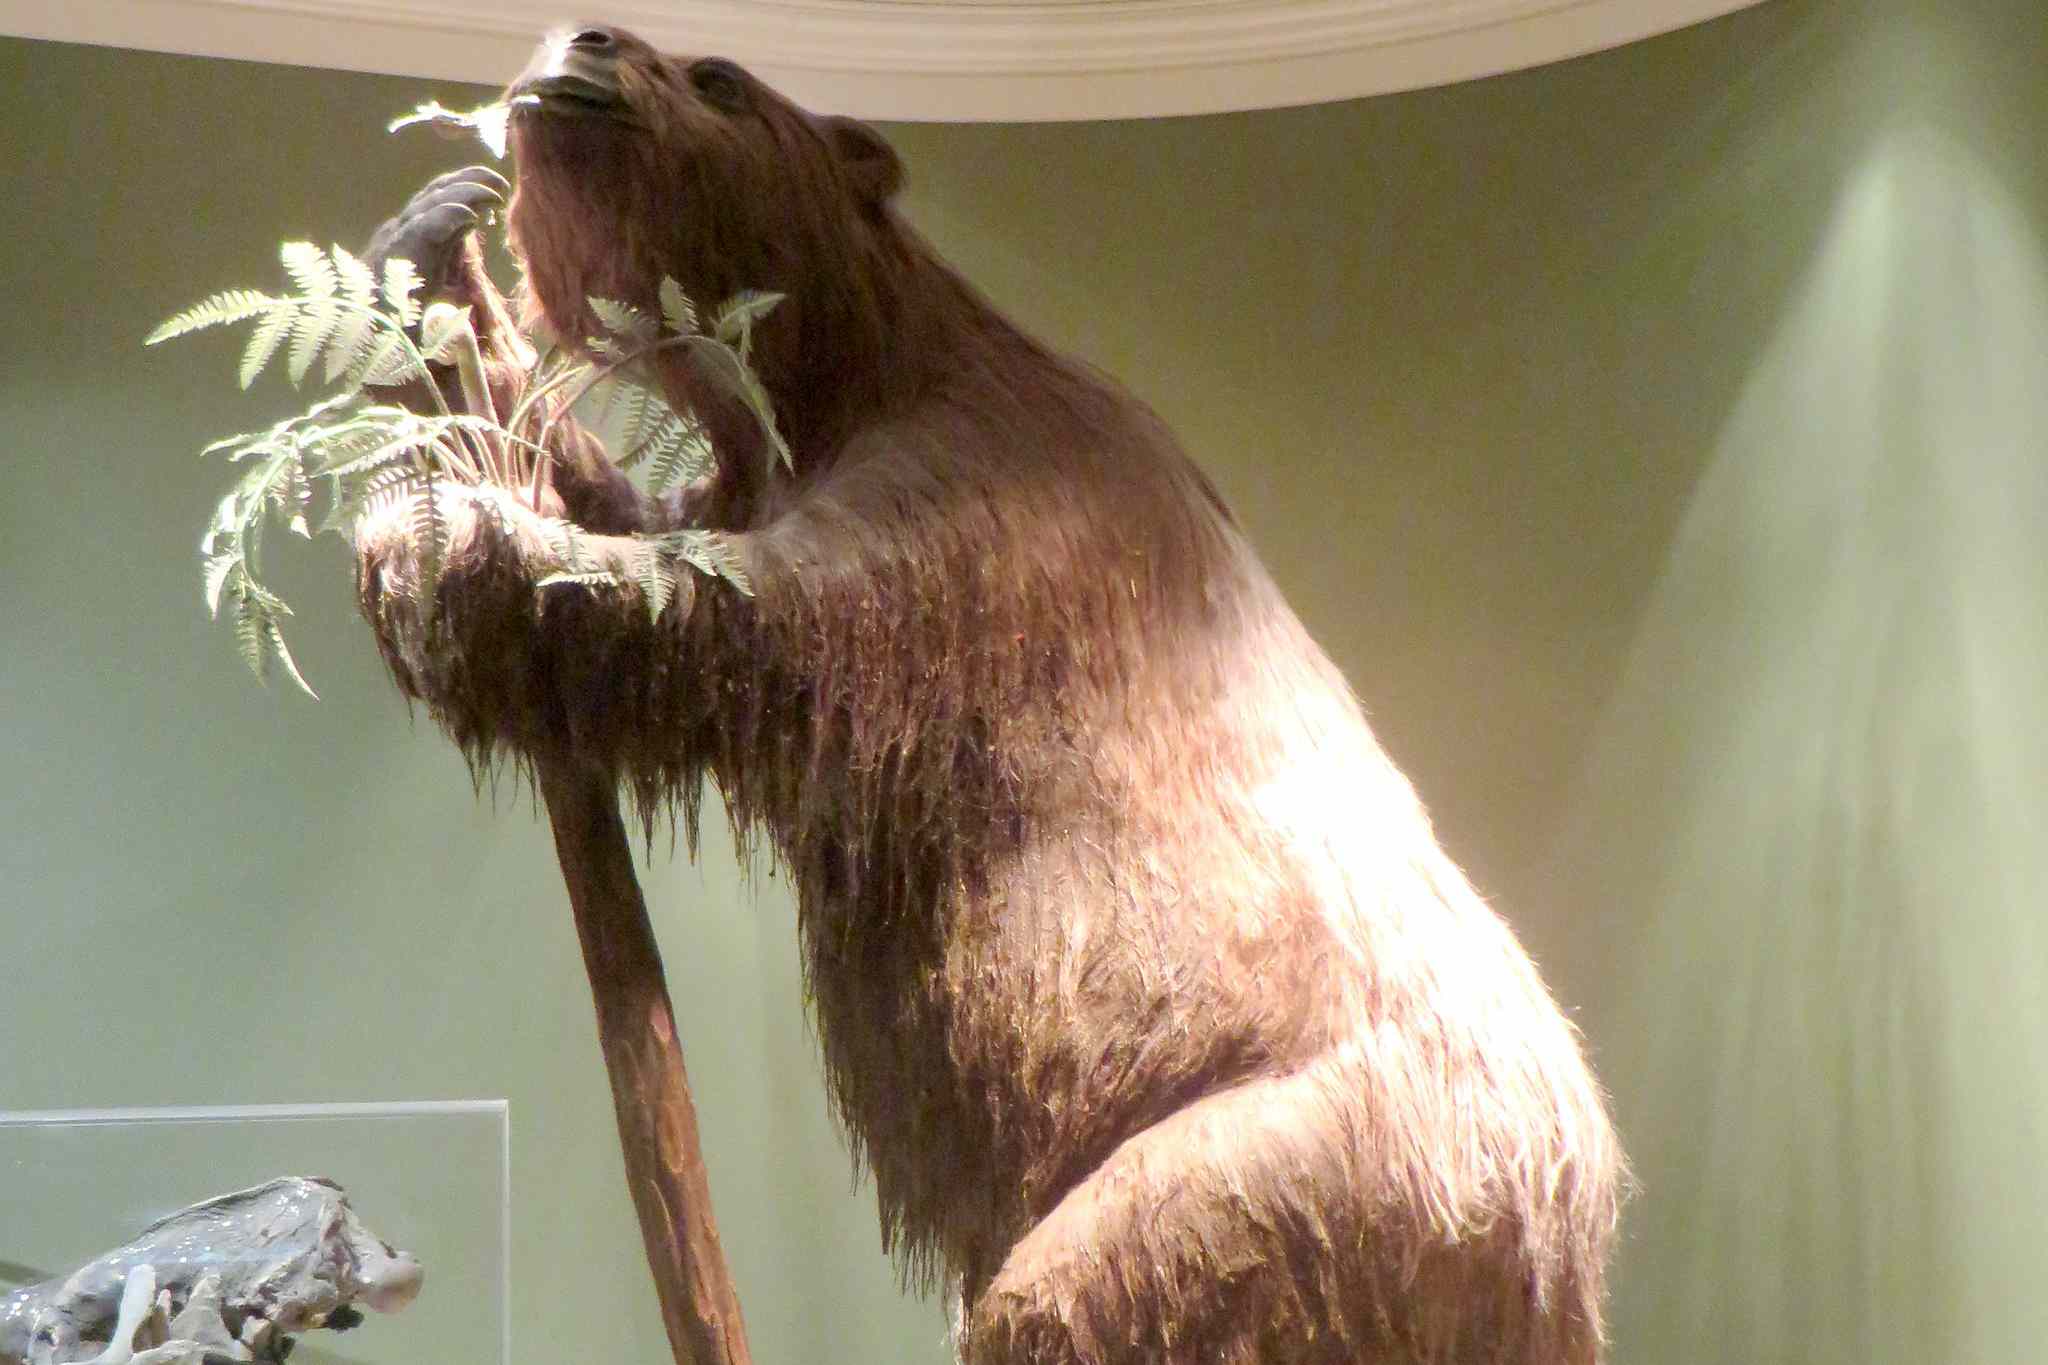 弗恩班克博物馆的巨型地懒模型。巨大的毛茸茸的棕熊像动物塔在棕榈树上，几乎接触到博物馆的天花板＂width=